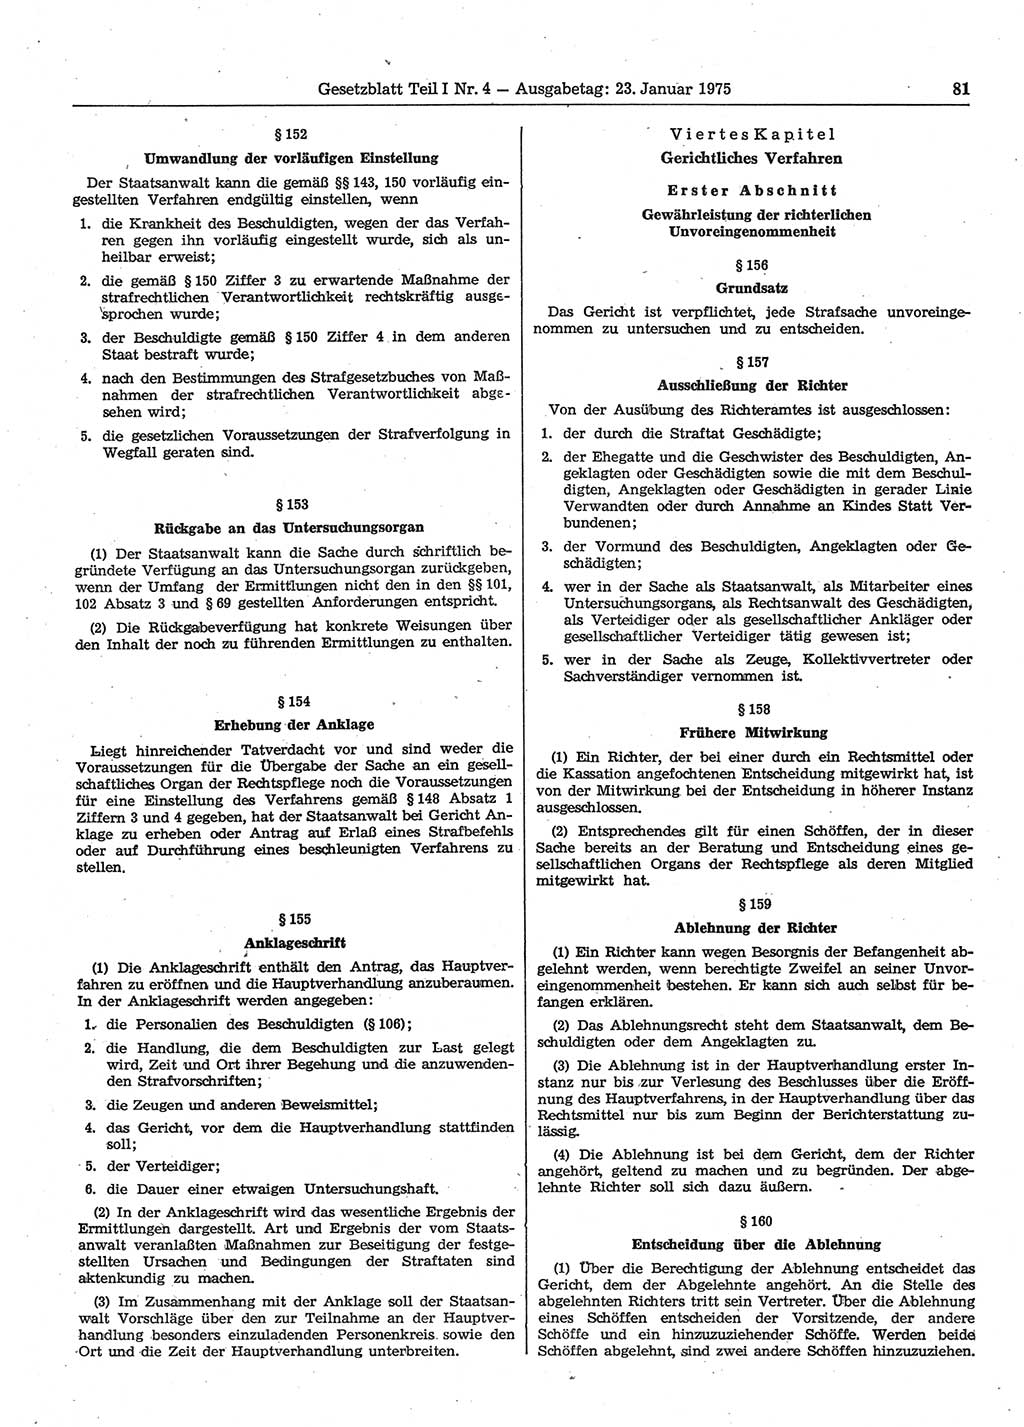 Gesetzblatt (GBl.) der Deutschen Demokratischen Republik (DDR) Teil Ⅰ 1975, Seite 81 (GBl. DDR Ⅰ 1975, S. 81)